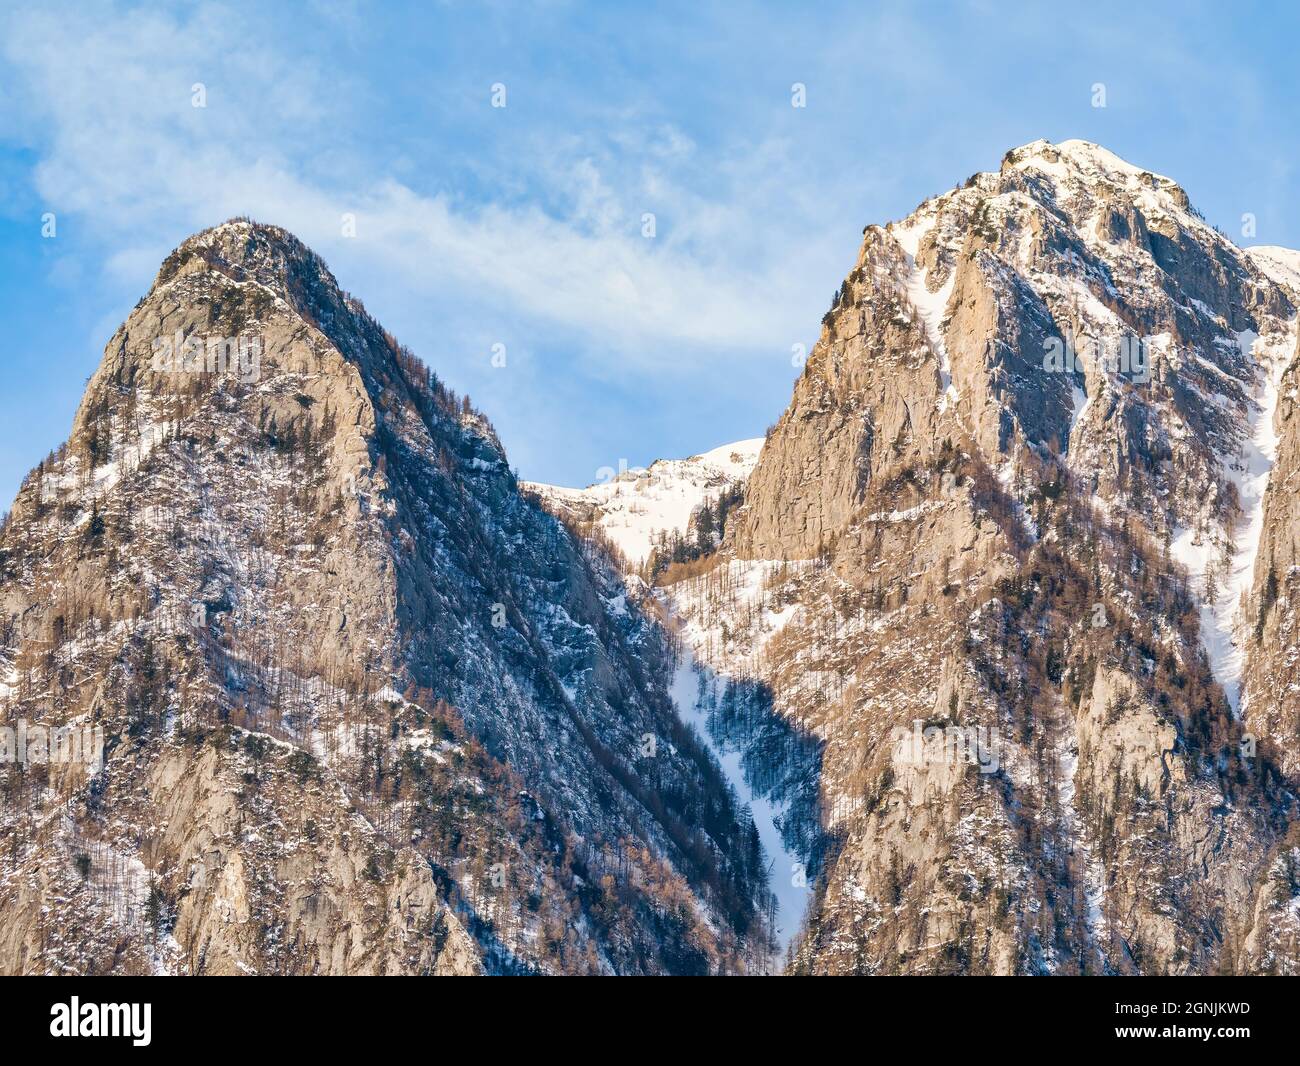 Détail avec un sommet rocheux en forme de pyramide recouvert de neige dans les monts Bucegi, Roumanie Banque D'Images